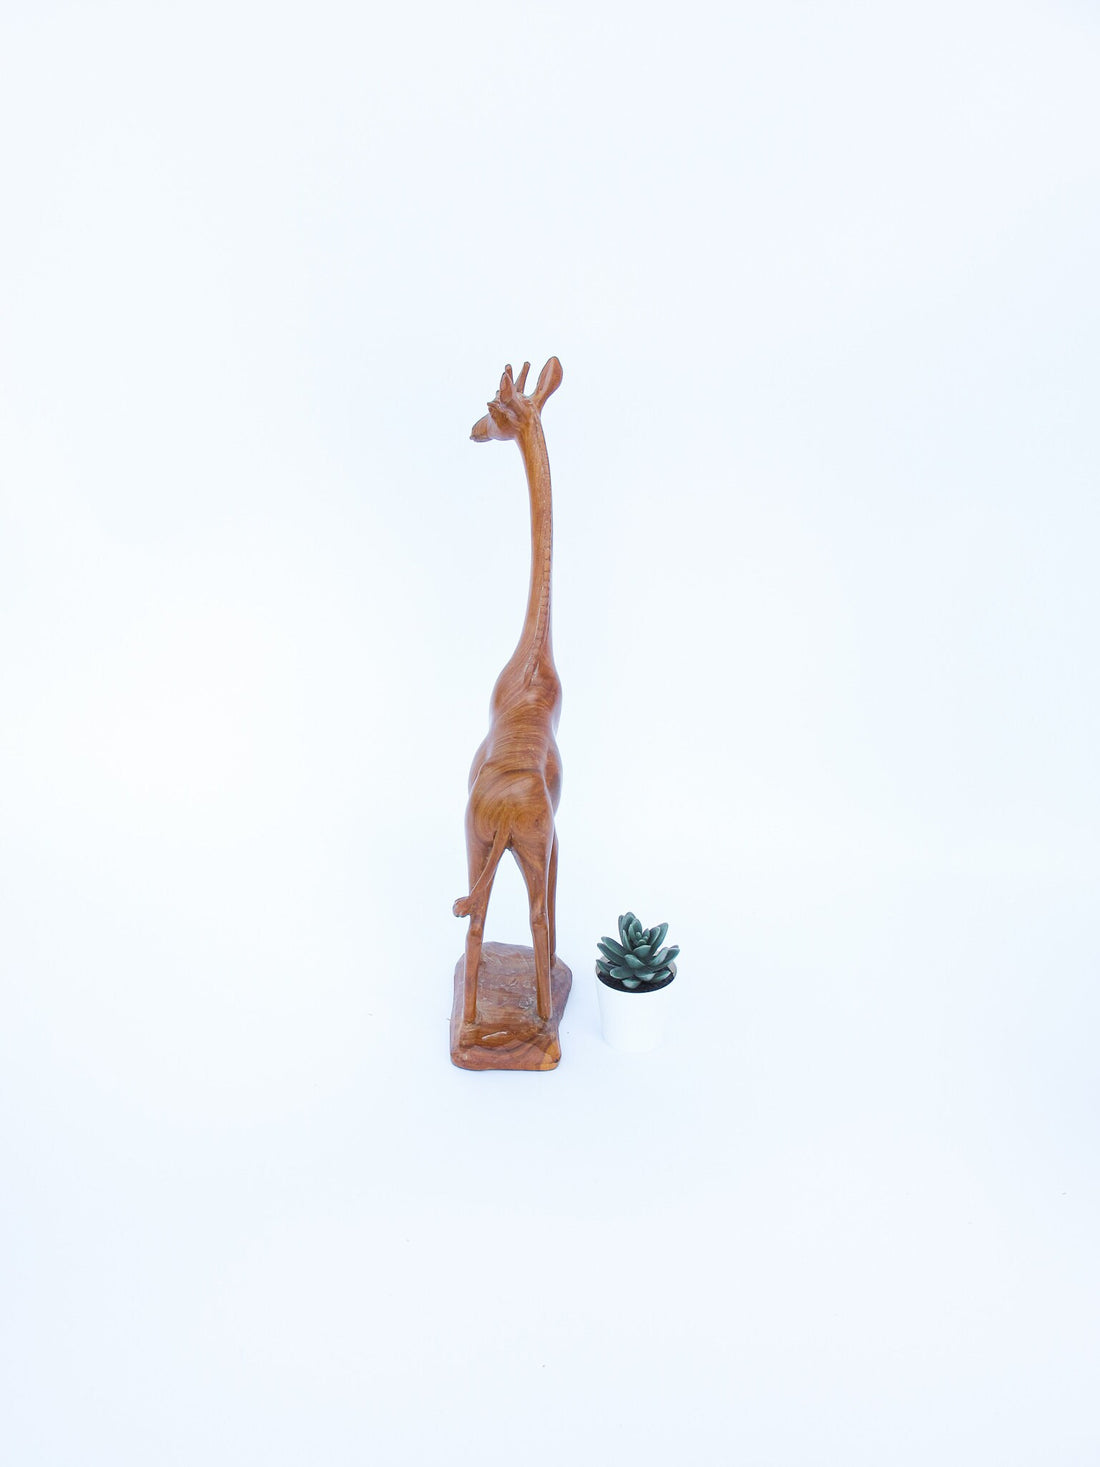 Hand Carved Wood Giraffe Sculpture Figure